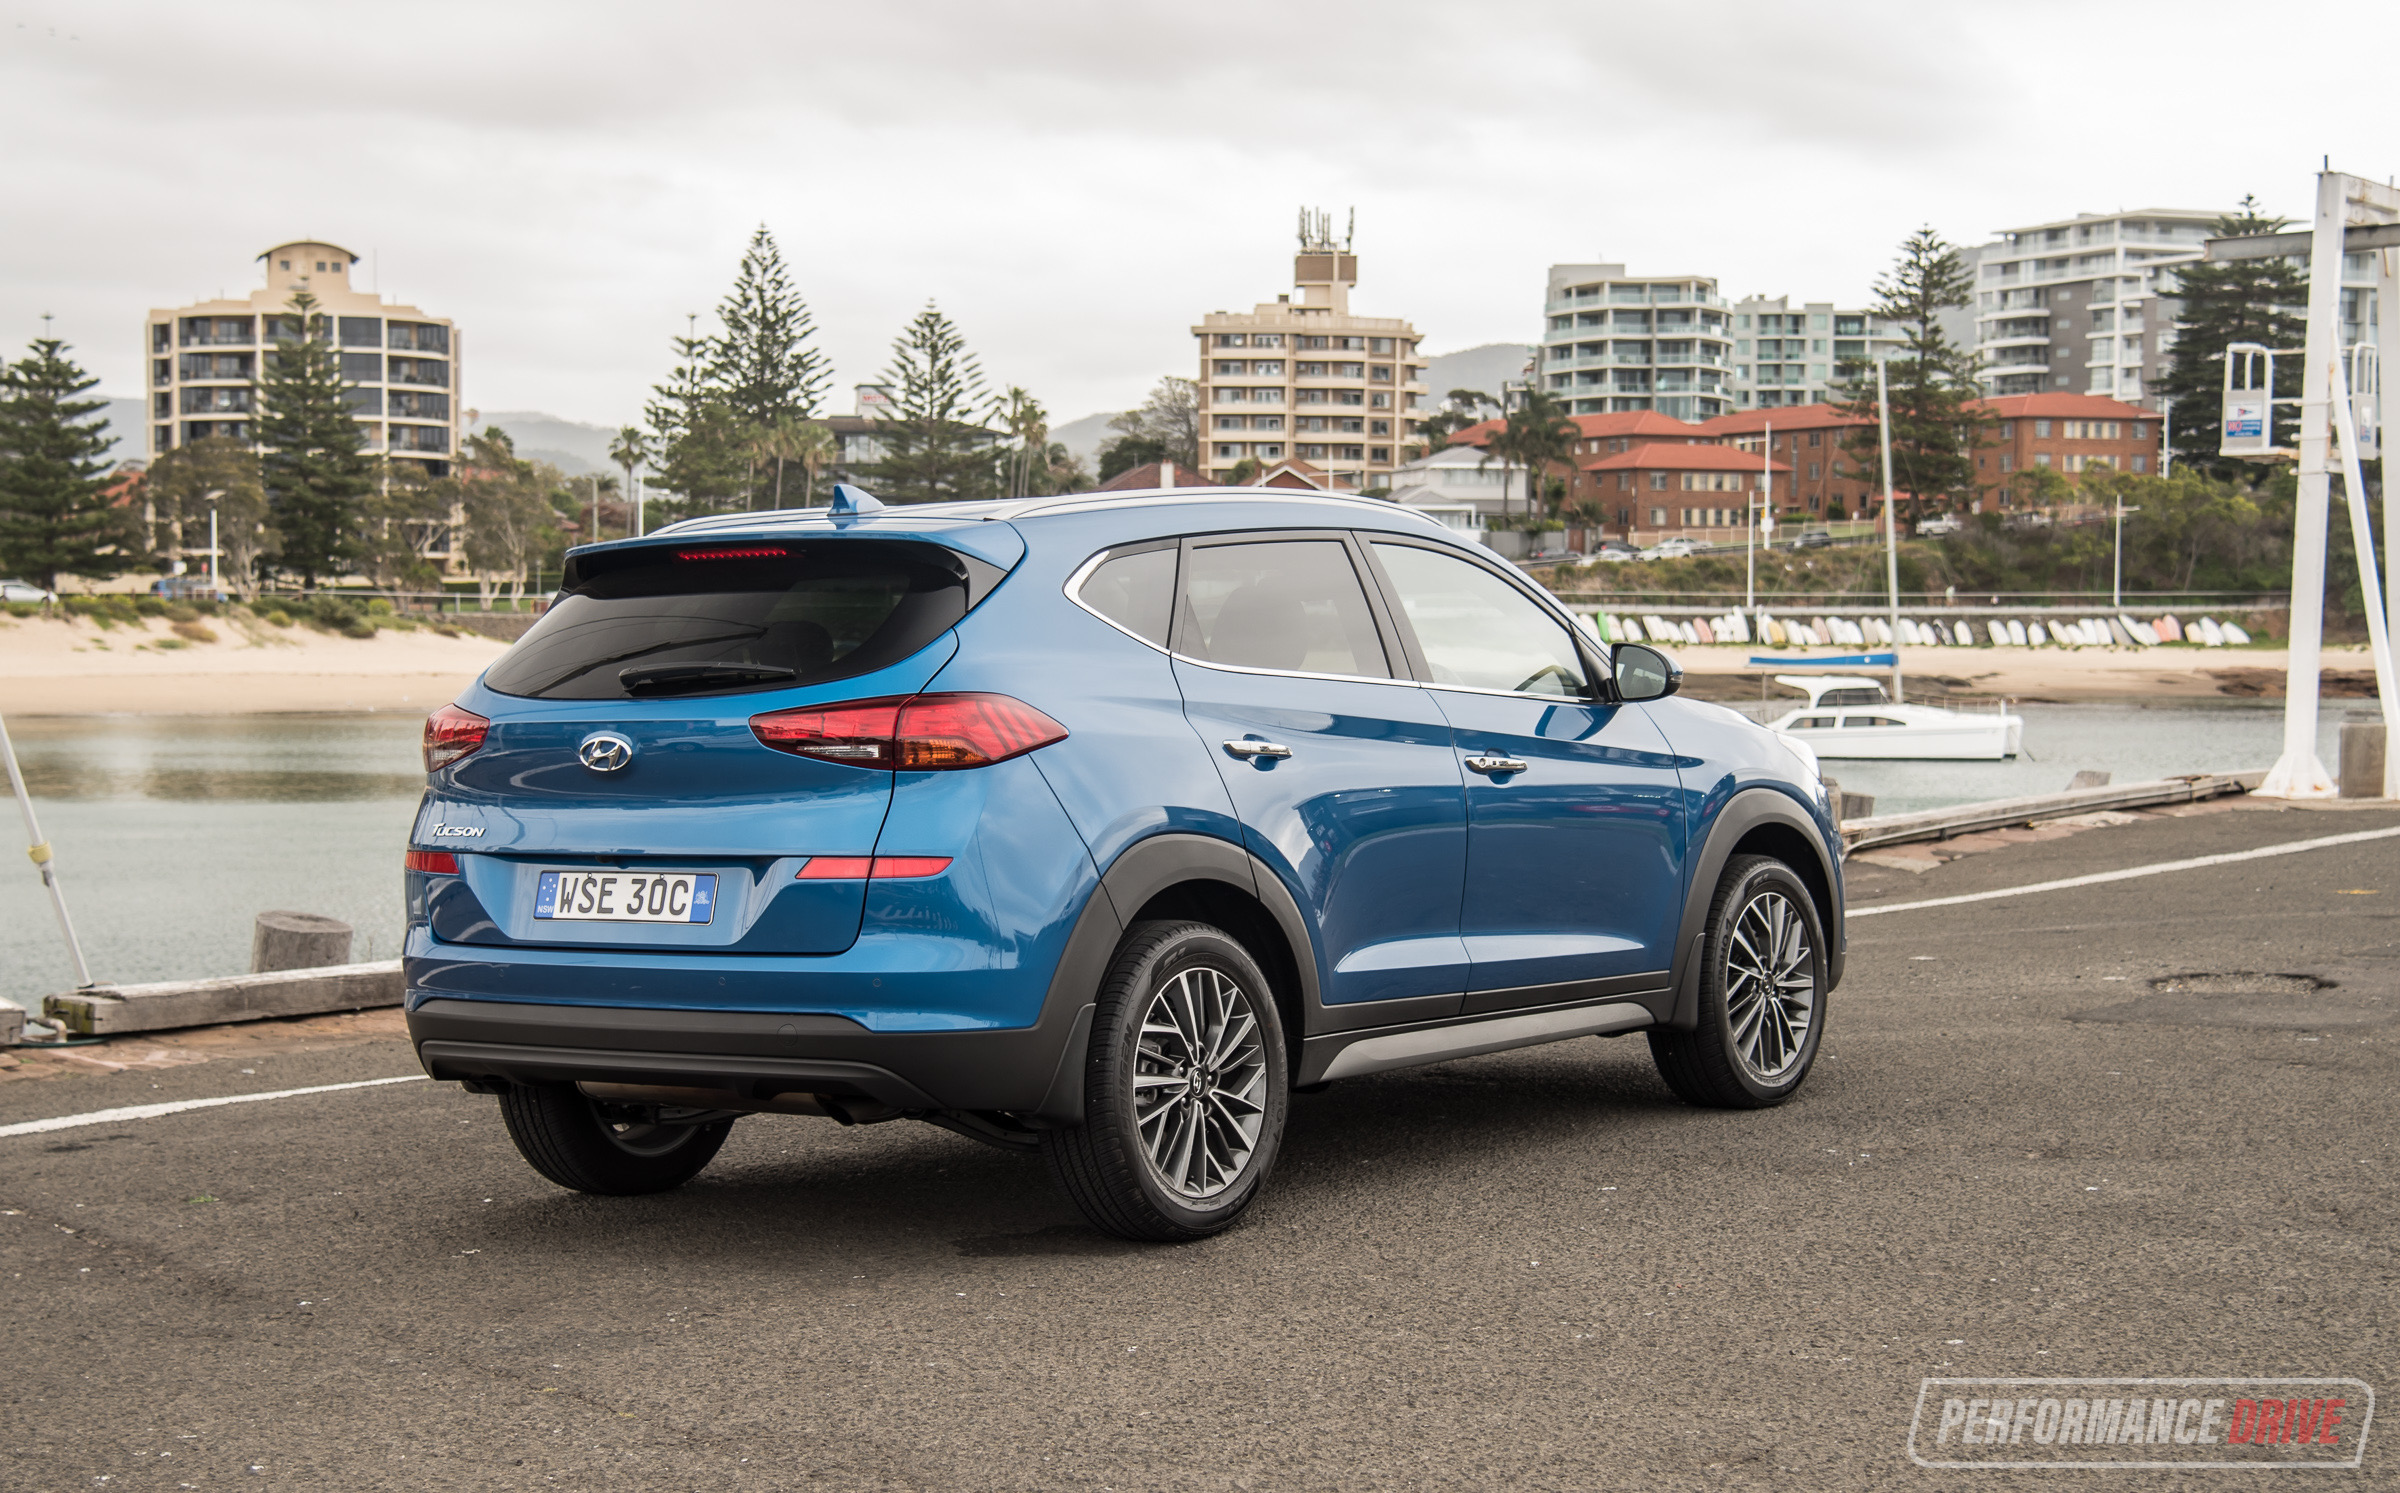 2019 Hyundai Tucson Elite review 2.0 GDi & 2.0 CRDi